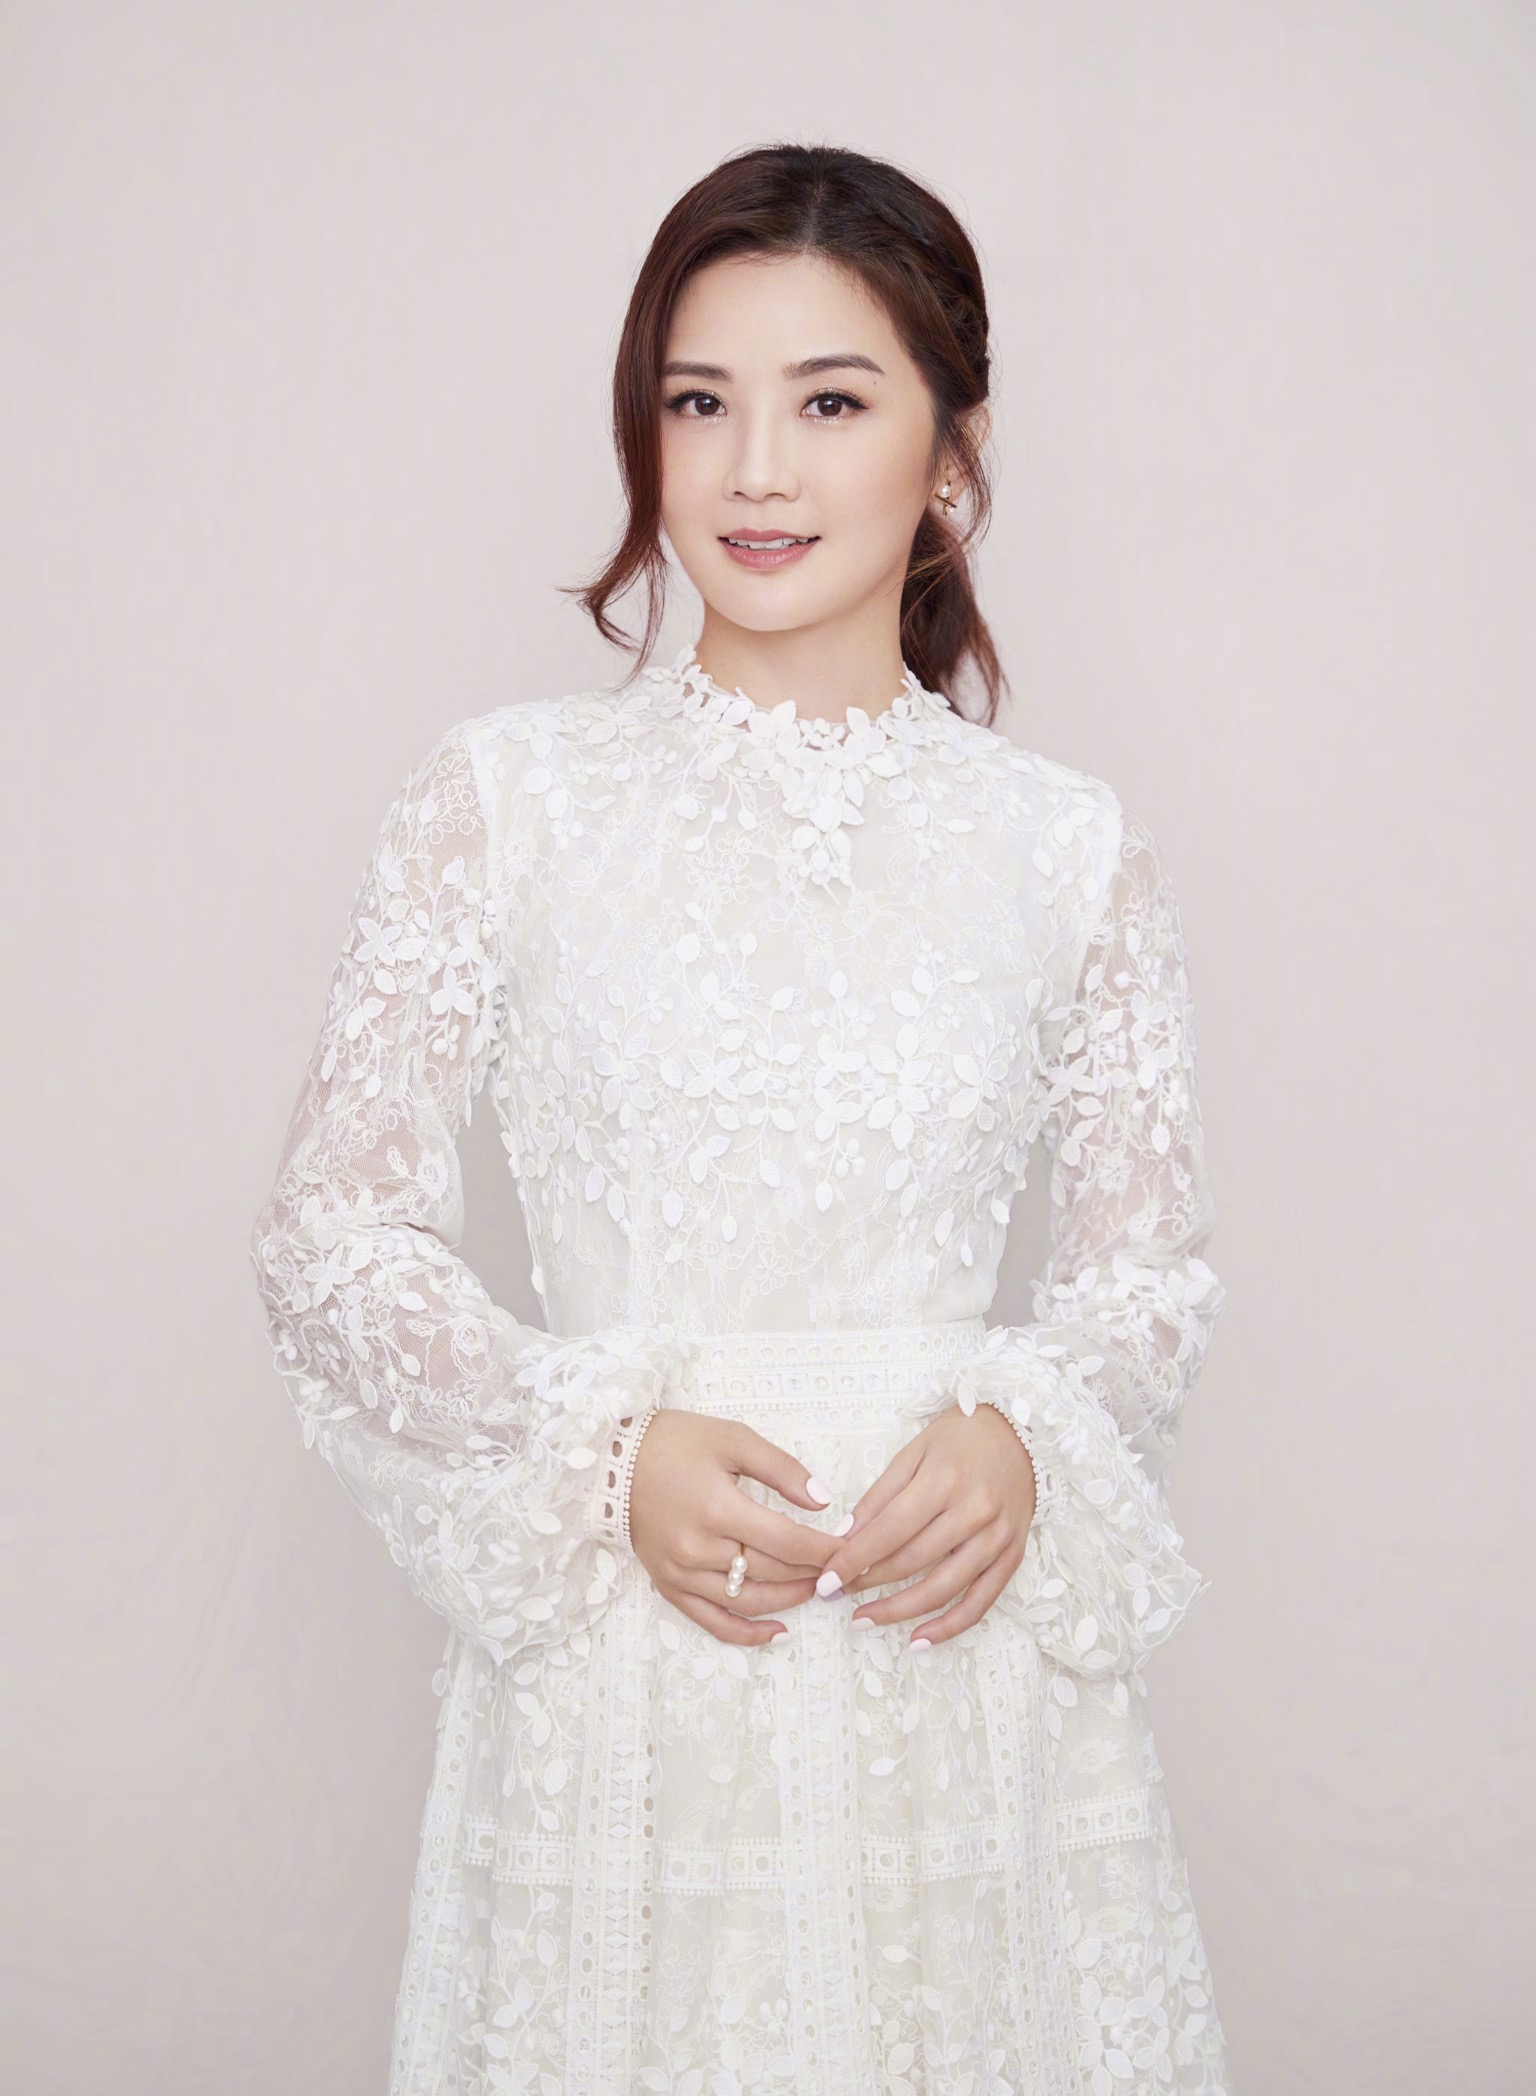 Asian Women Celebrity Actress Twins Zhuoyan Cai 1536x2096